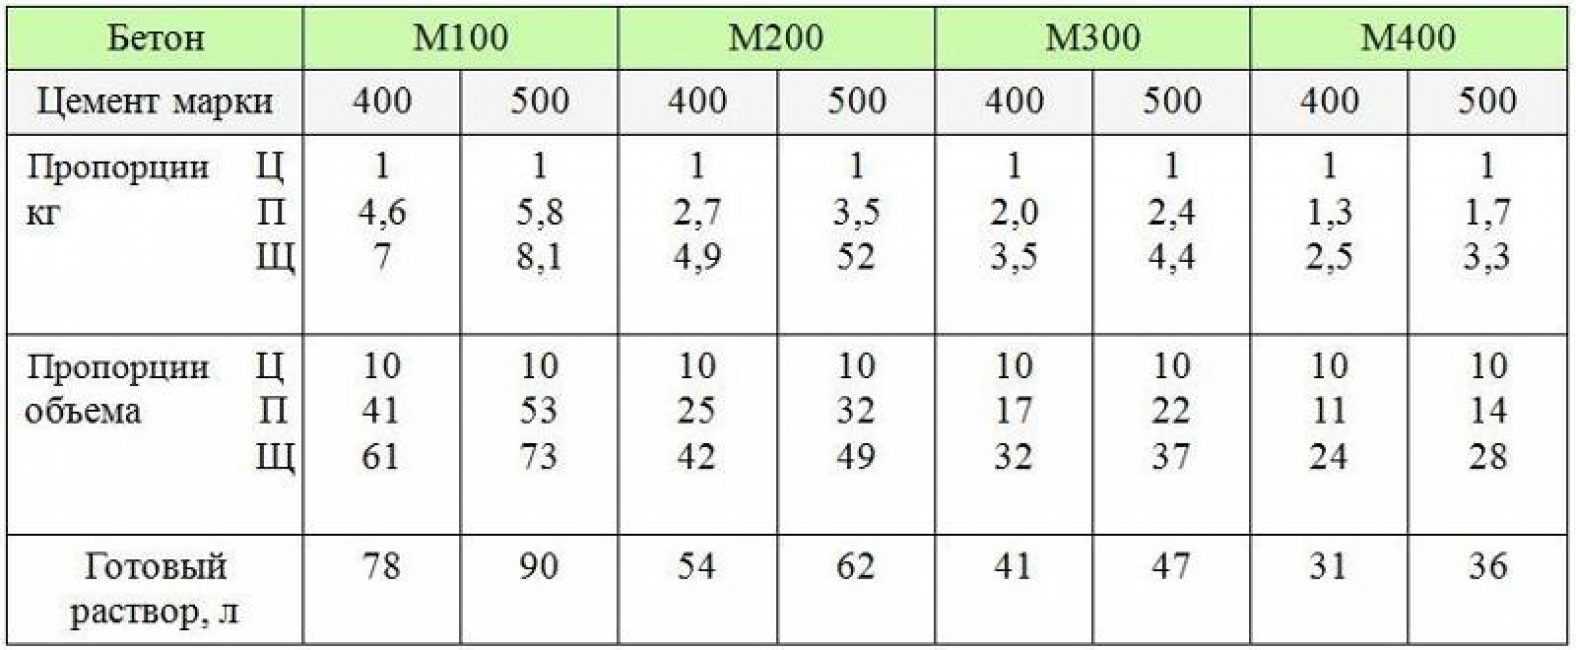 Бетон марки м150: состав, технические характеристики и область применения